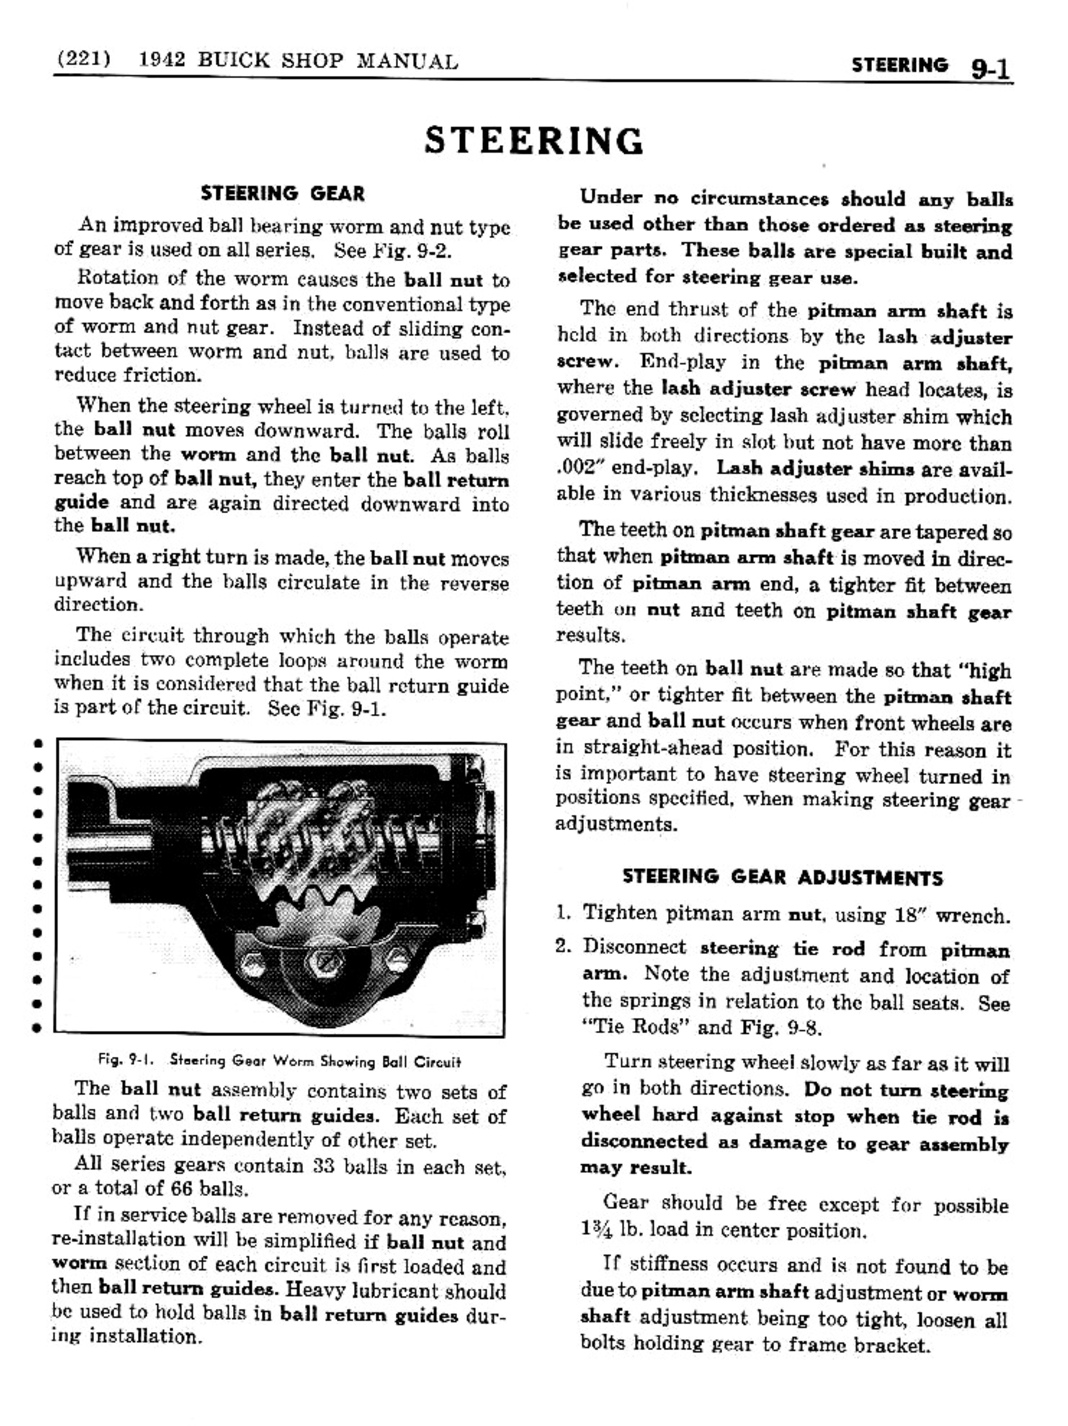 n_10 1942 Buick Shop Manual - Steering-001-001.jpg